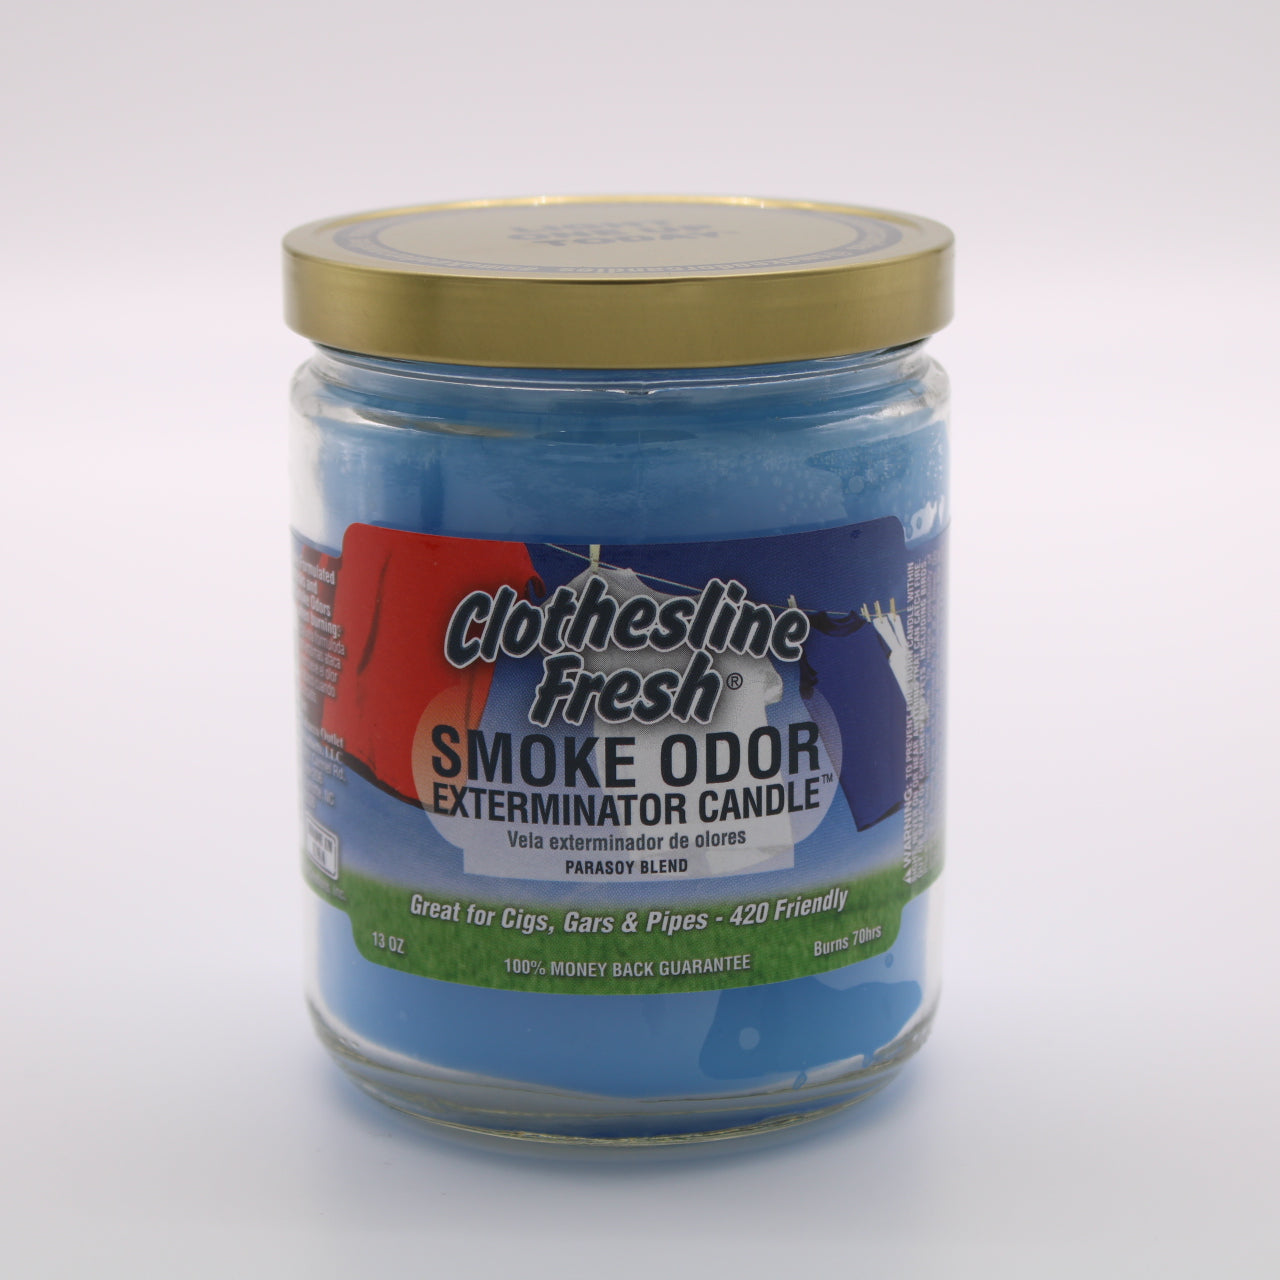 Smoke Odor Exterminator Candle - Clothesline